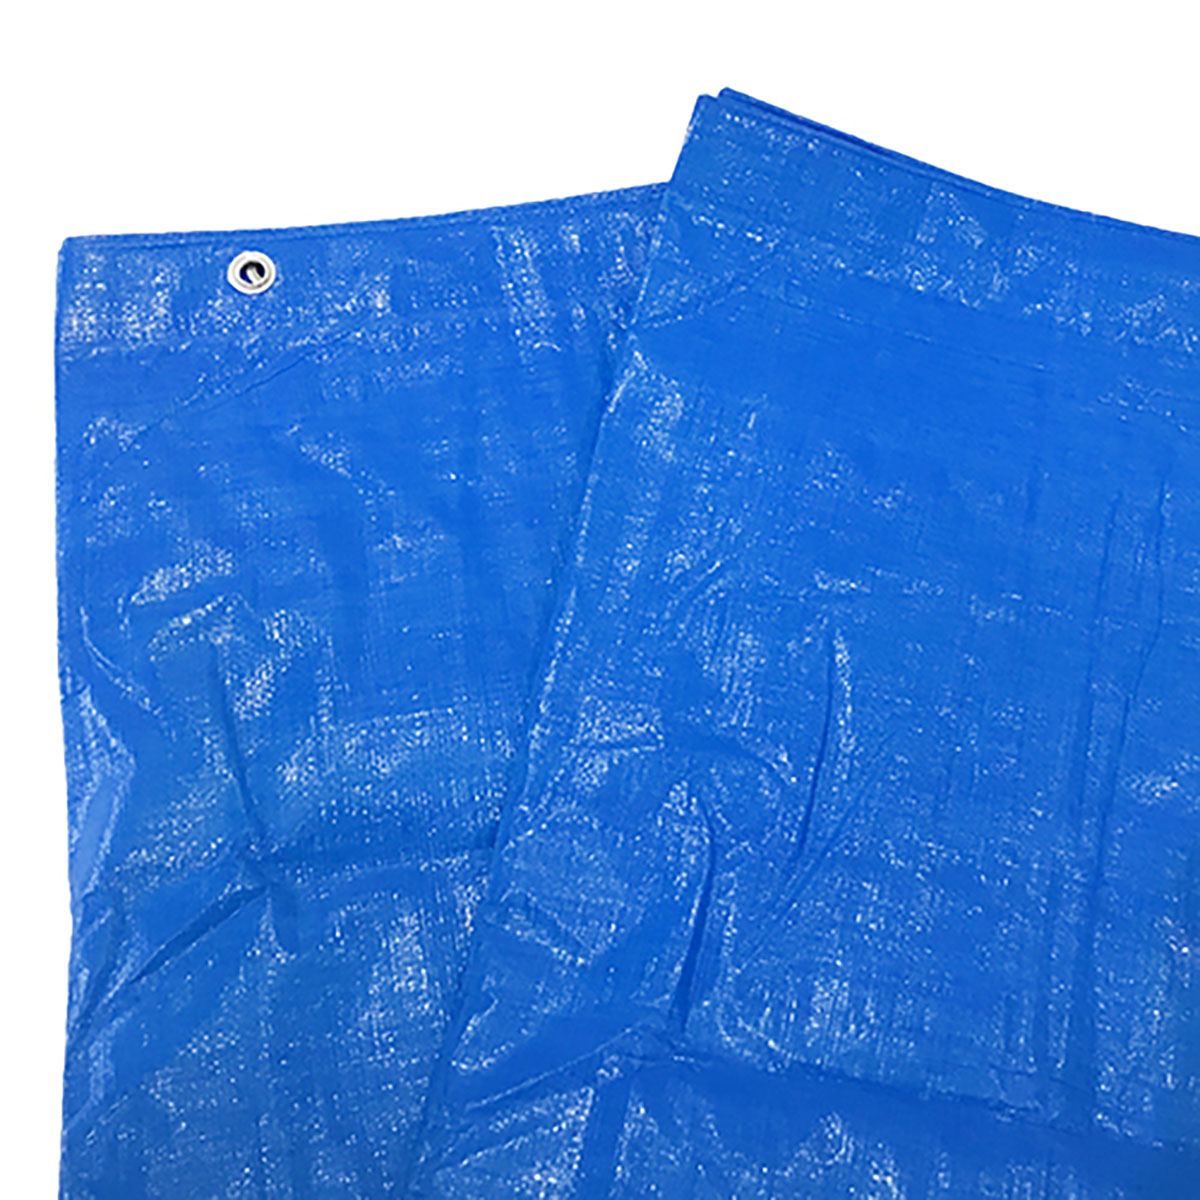 ブルーシート 巾約3.4×長さ約5.2m #3000